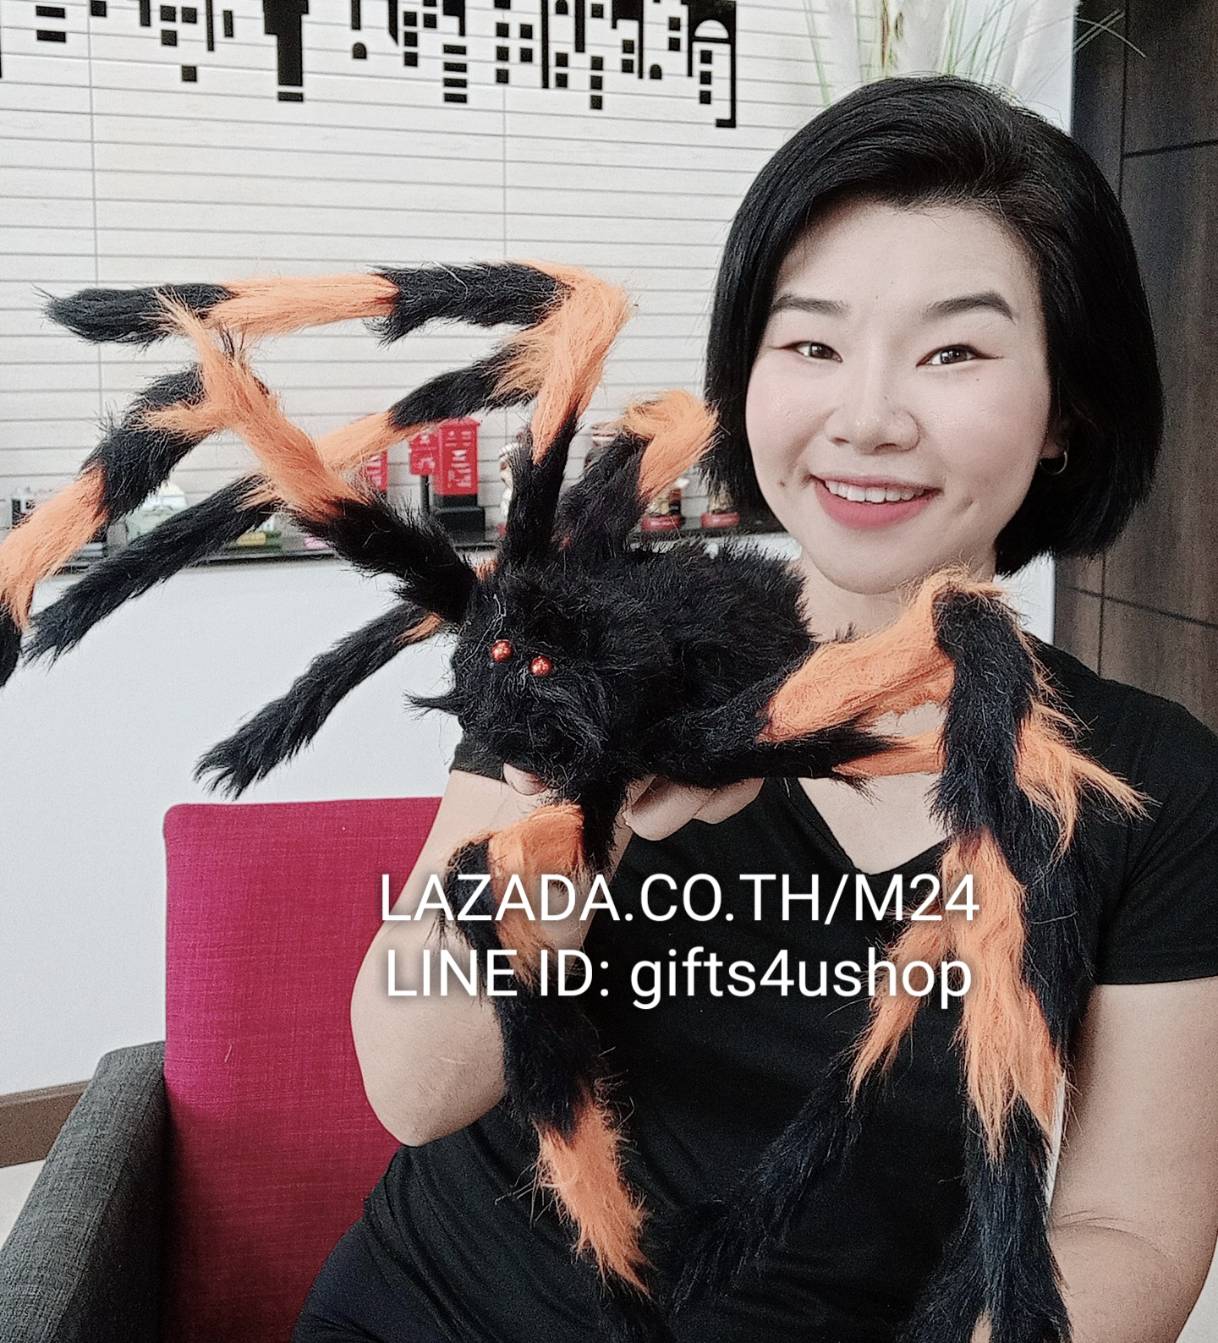 1 ตัว ยาว 70 c.m. แมงมุมยักษ์ แมงมุมปลอม แมงมุม ยักษ์ ตัวใหญ่ ของปลอม ของเล่น ตัวตลก ของเล่นแกล้งคน อุปกรณ์ตกแต่ง ฮาโลวีน black widow giant spider web m24